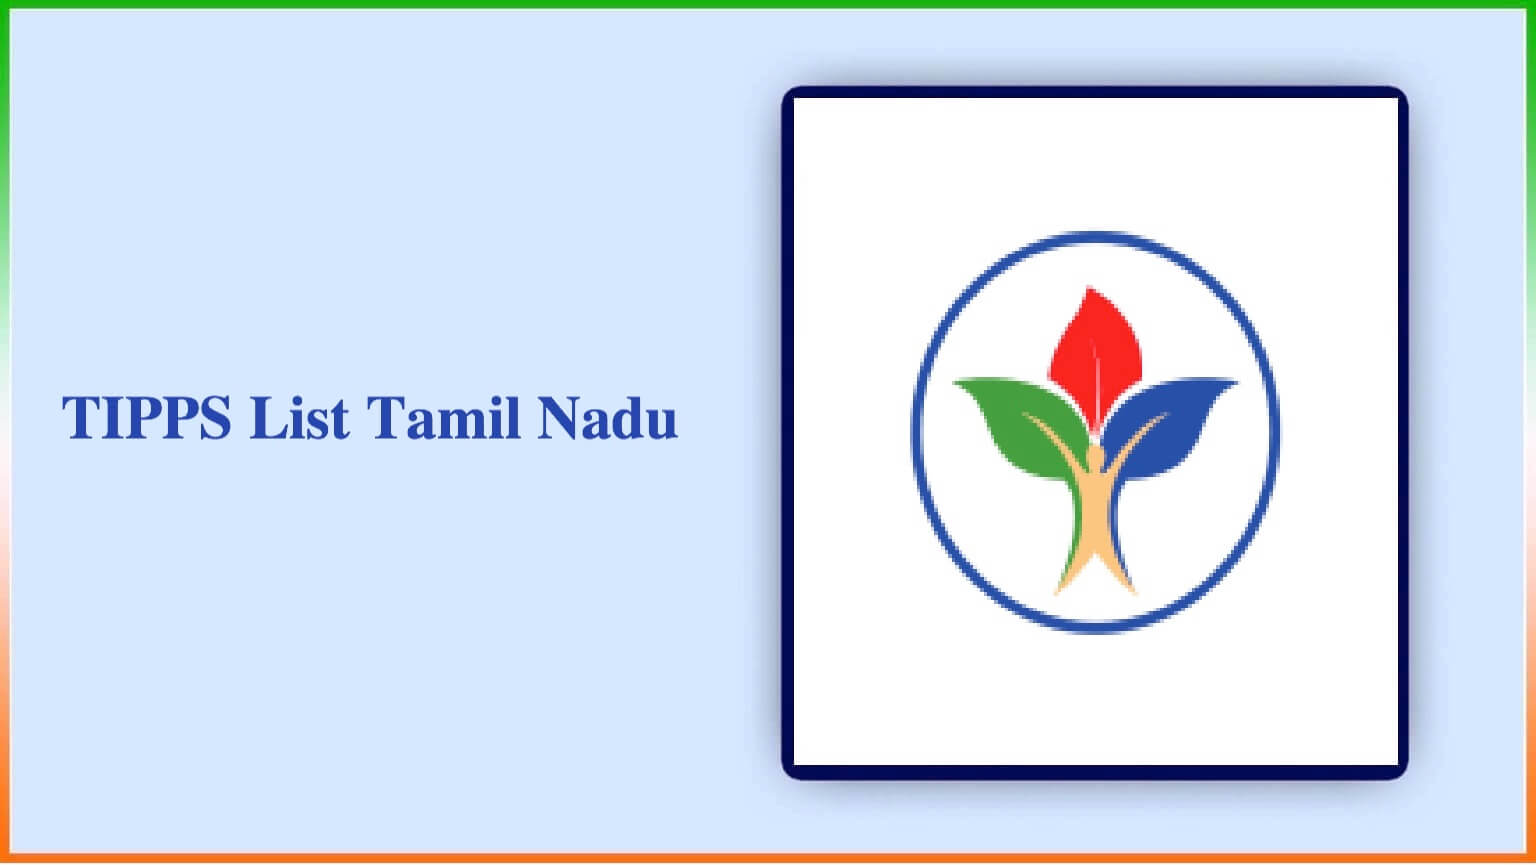 Tipps List Tamil Nadu